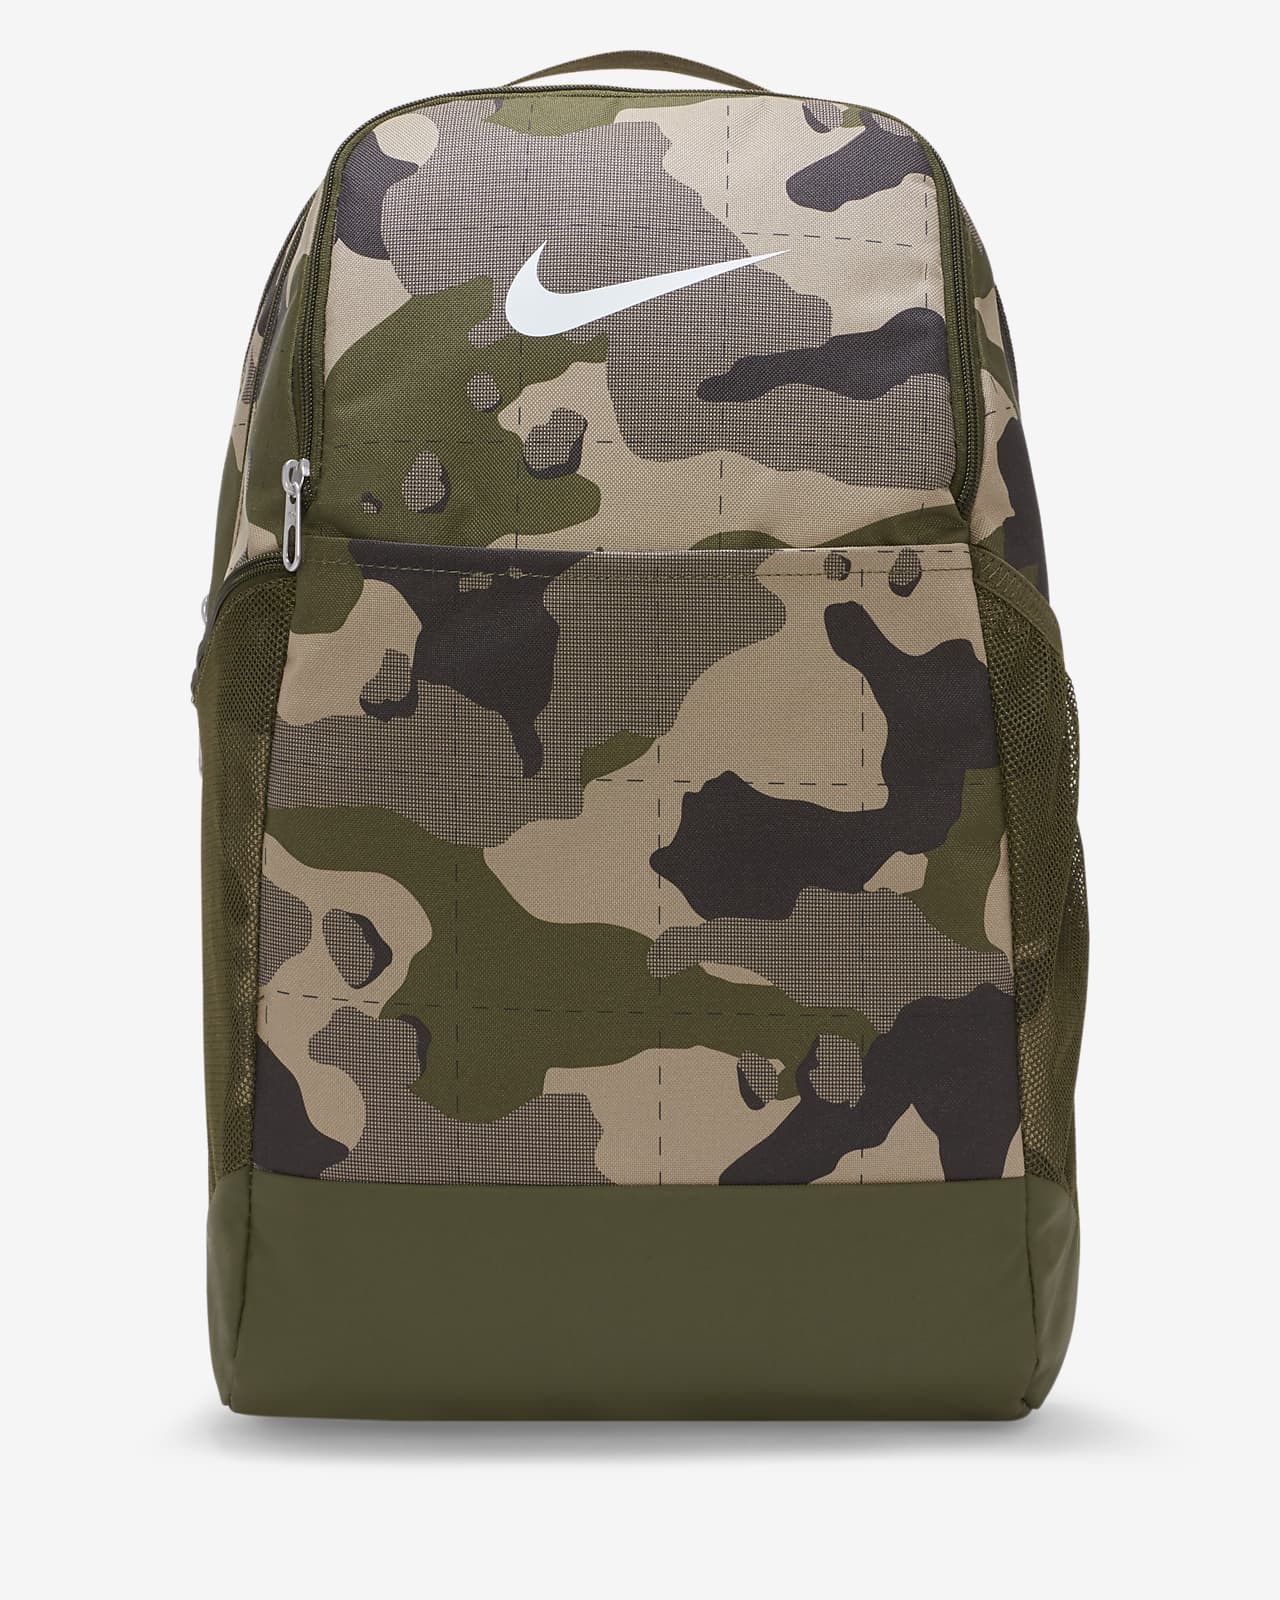 Träningsryggsäck Nike Brasilia  med kamouflagemönster (Medium, 24 l)